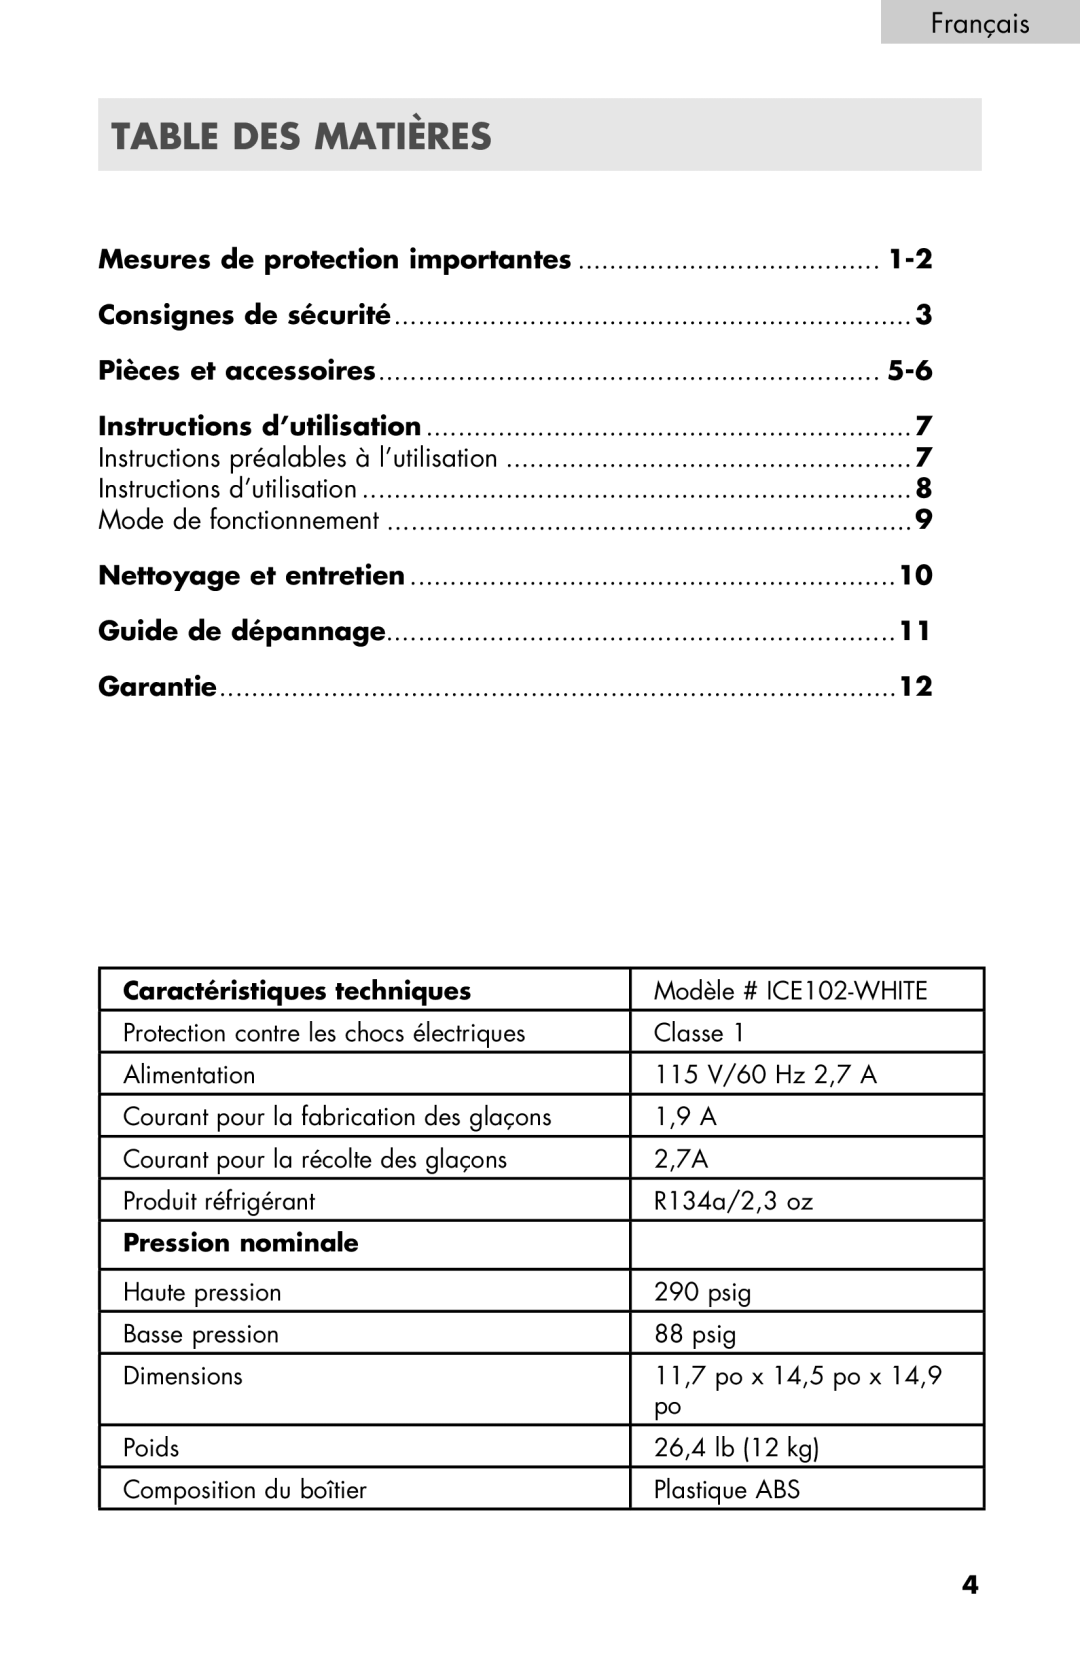 Igloo ICE102-WHITE manual Table Des Matières, Français, Mesures de protection importantes 